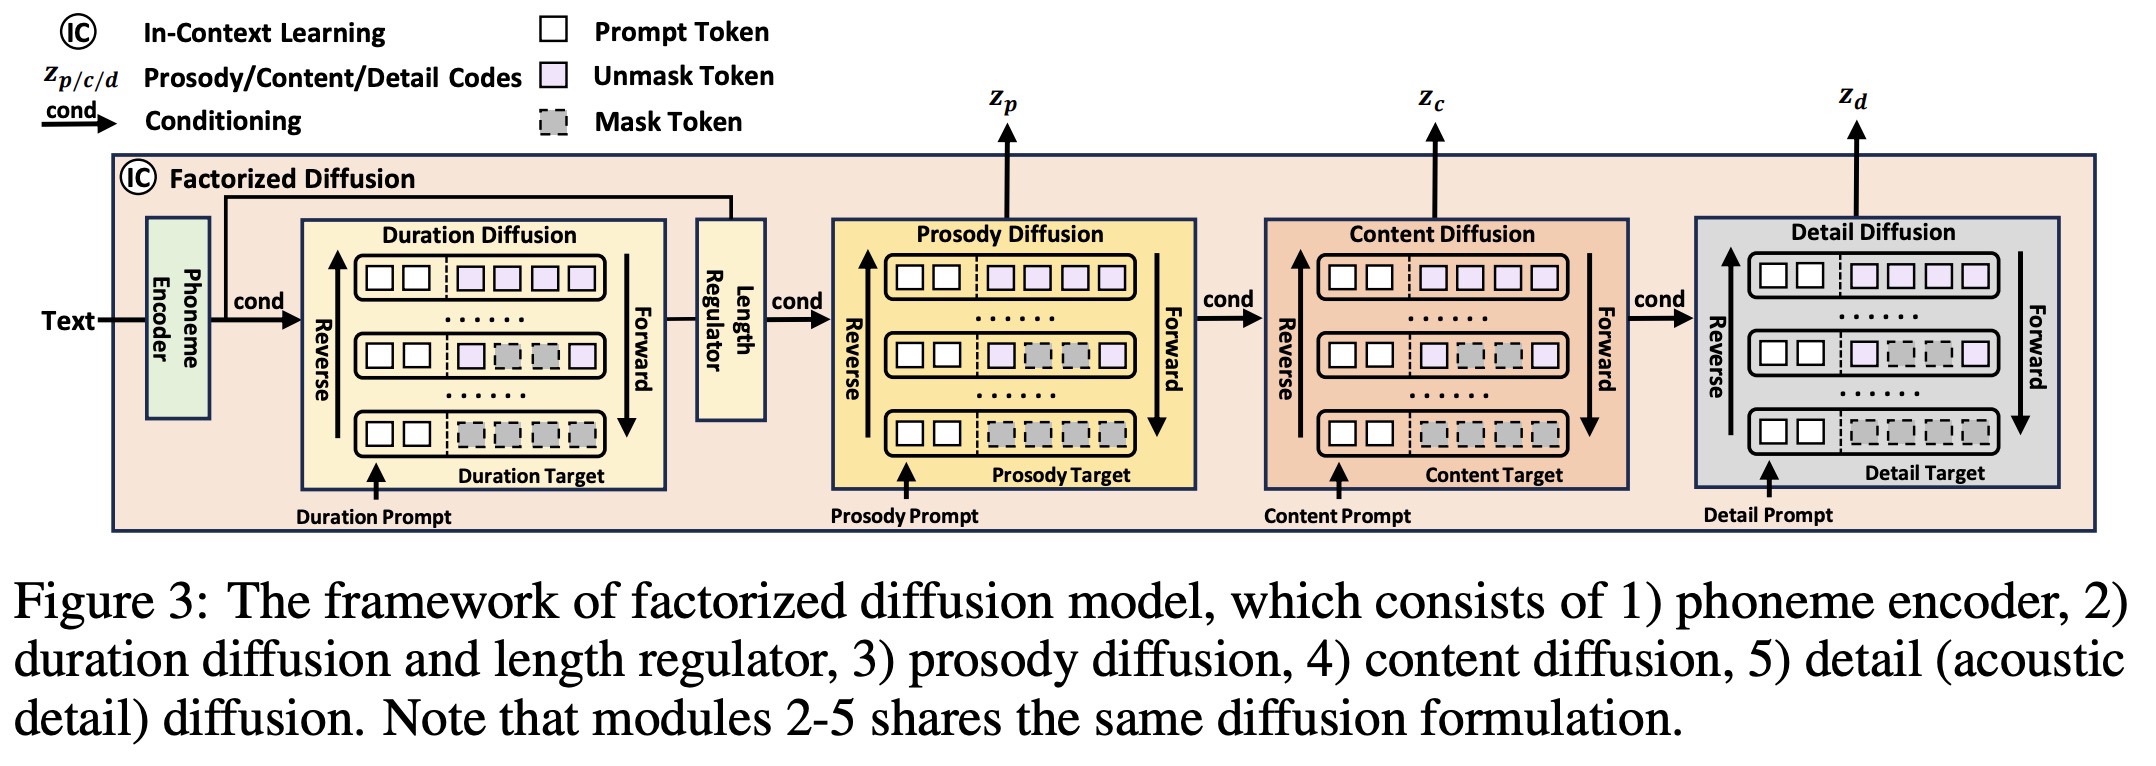 Factorized Diffusion Model